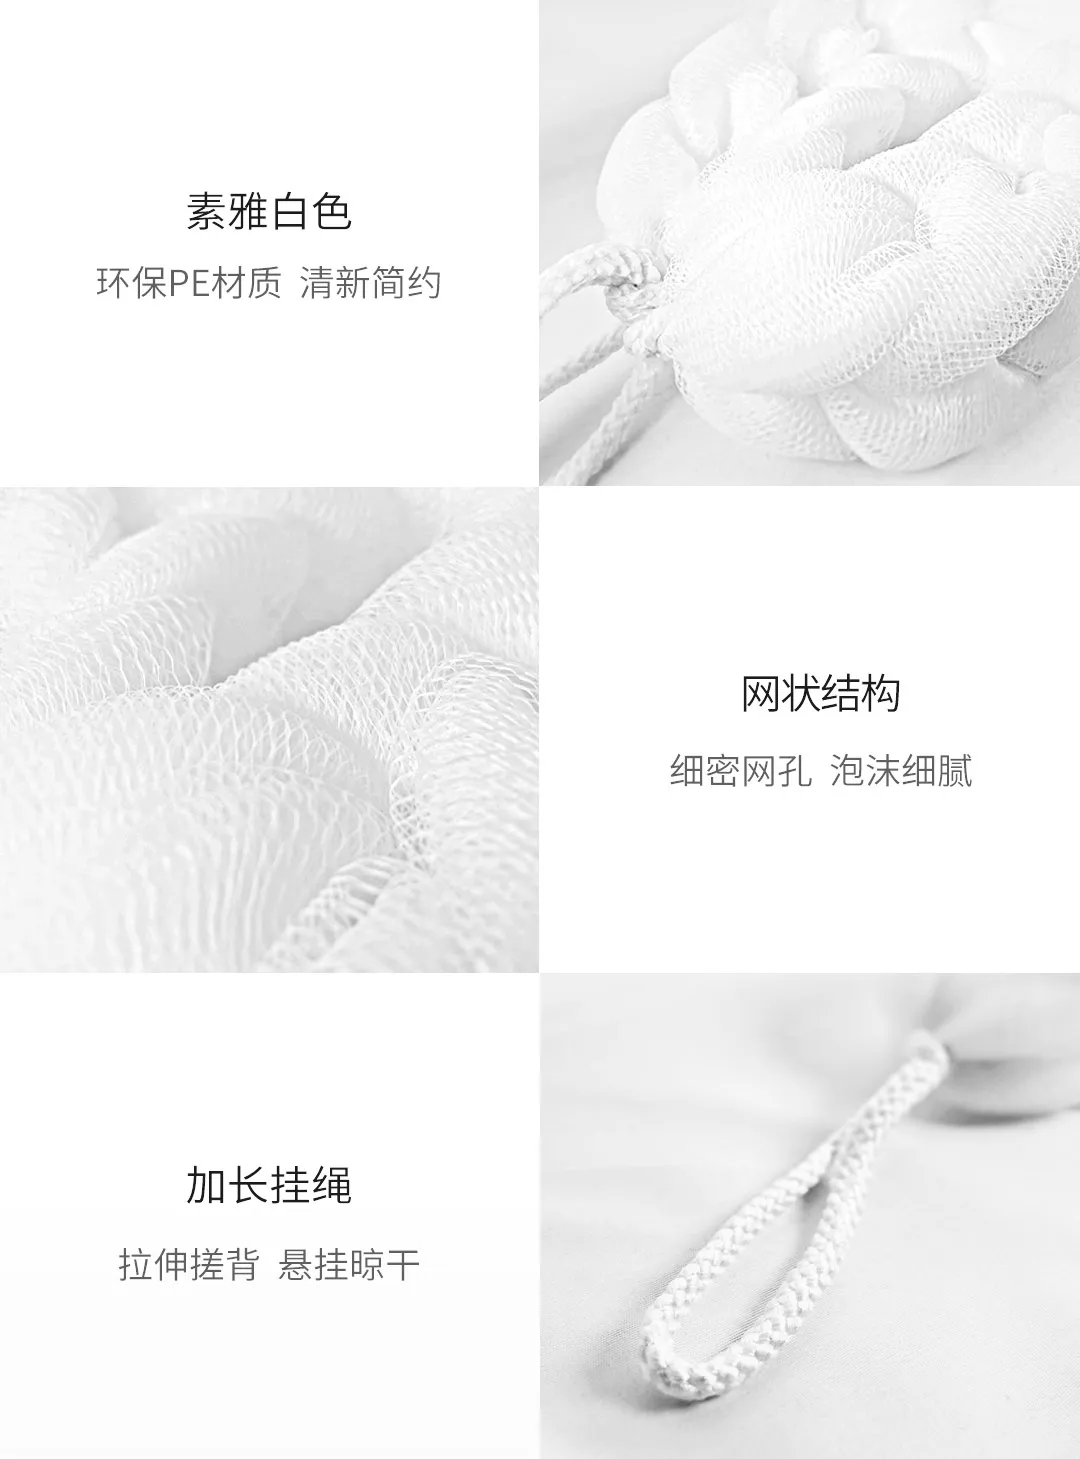 Xiaomi Mijia Youpin полоска для ванны белая богатая пеной мягкая текстура легко моется высокое качество